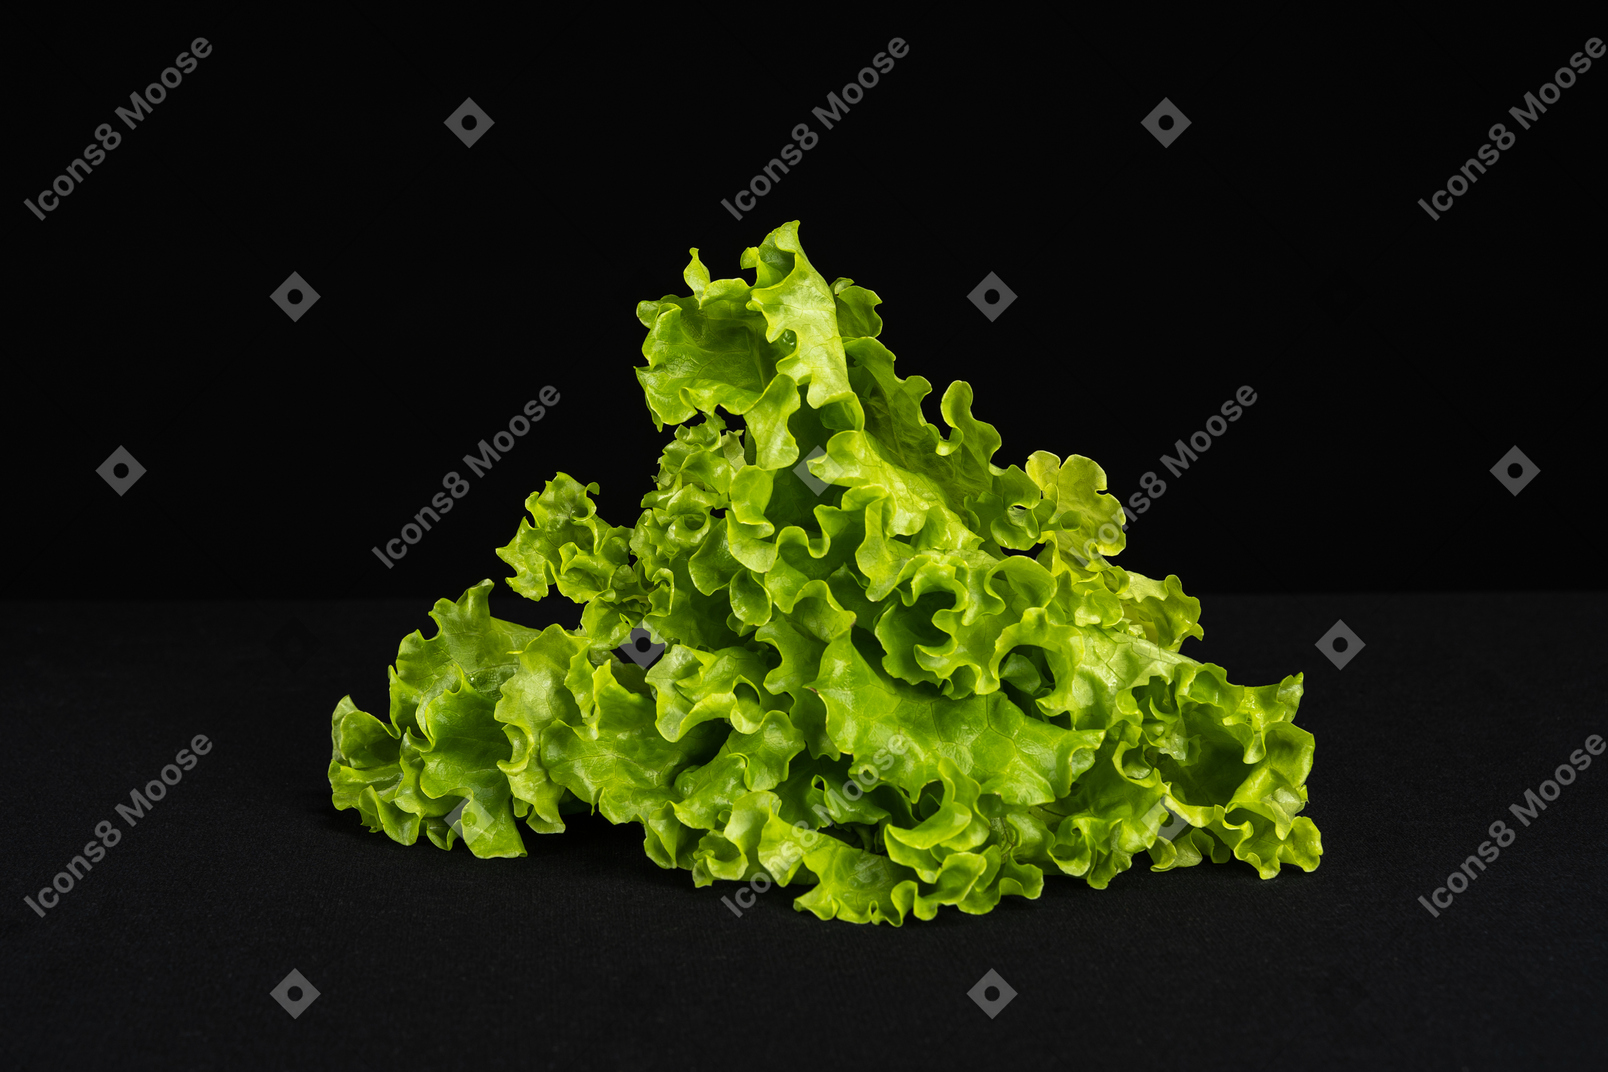 Pile of green lettuce